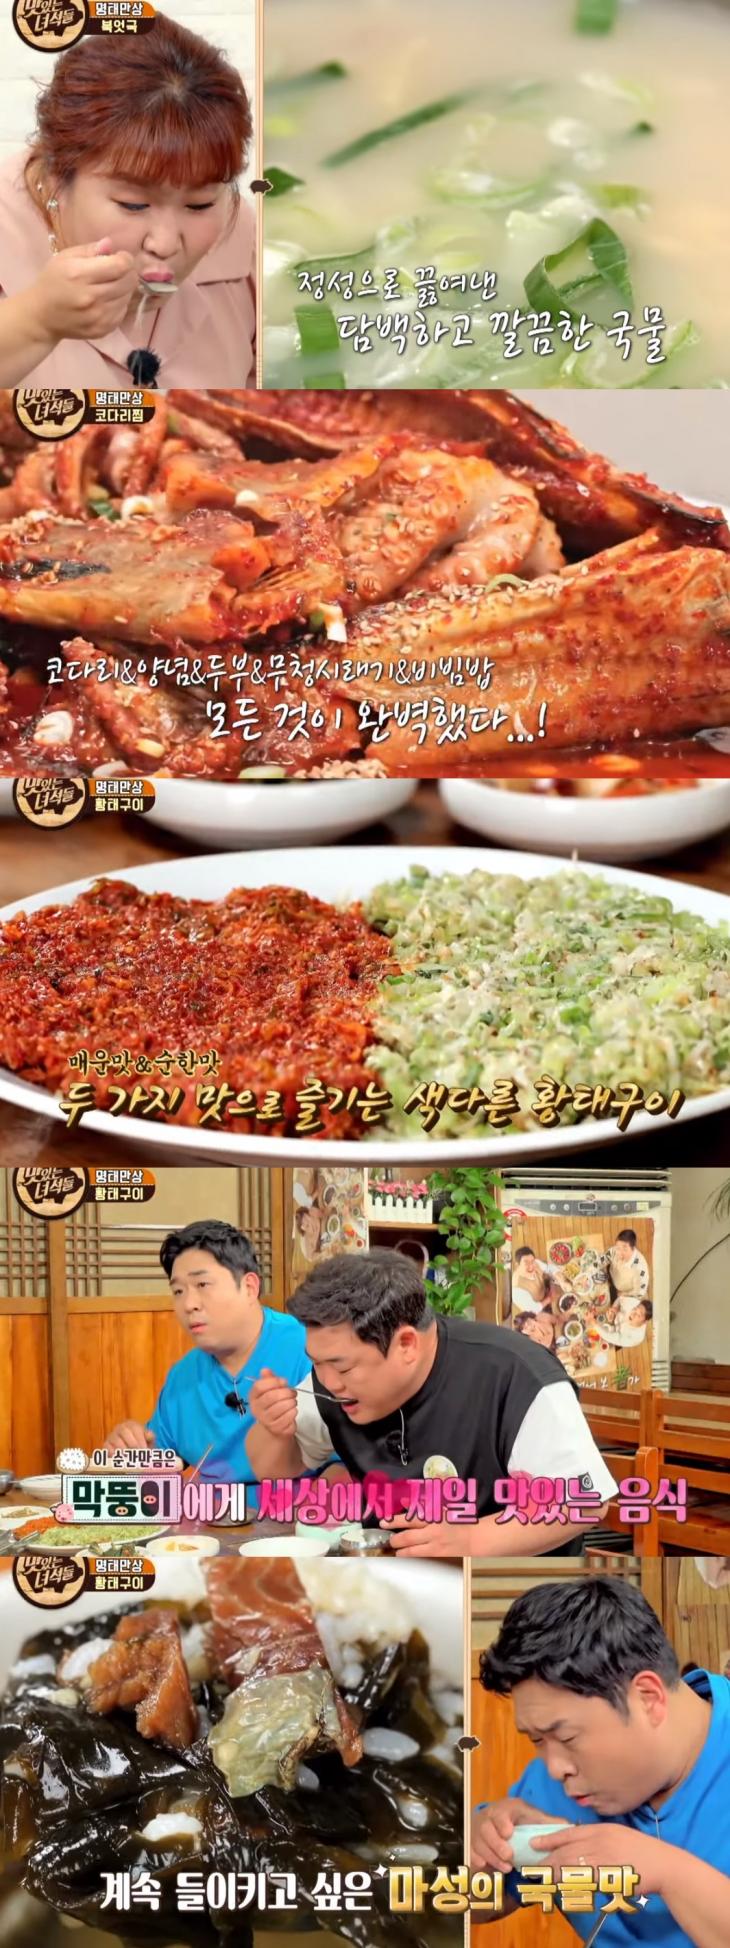 코미디TV 예능프로그램 '맛있는 녀석들'